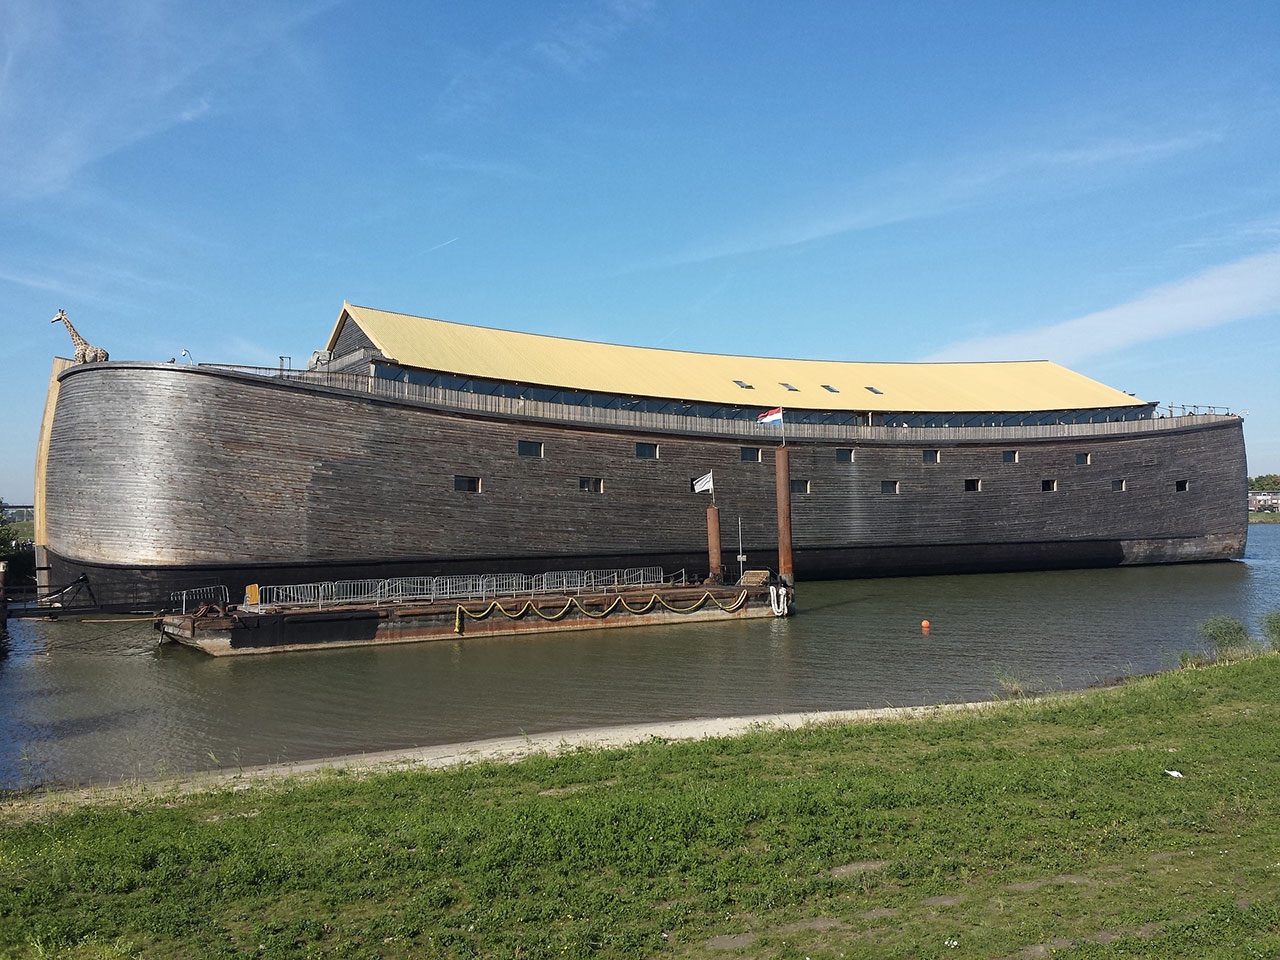 L'arche de Noé : une gageure administrative au 21ème siècle - CEDEPA